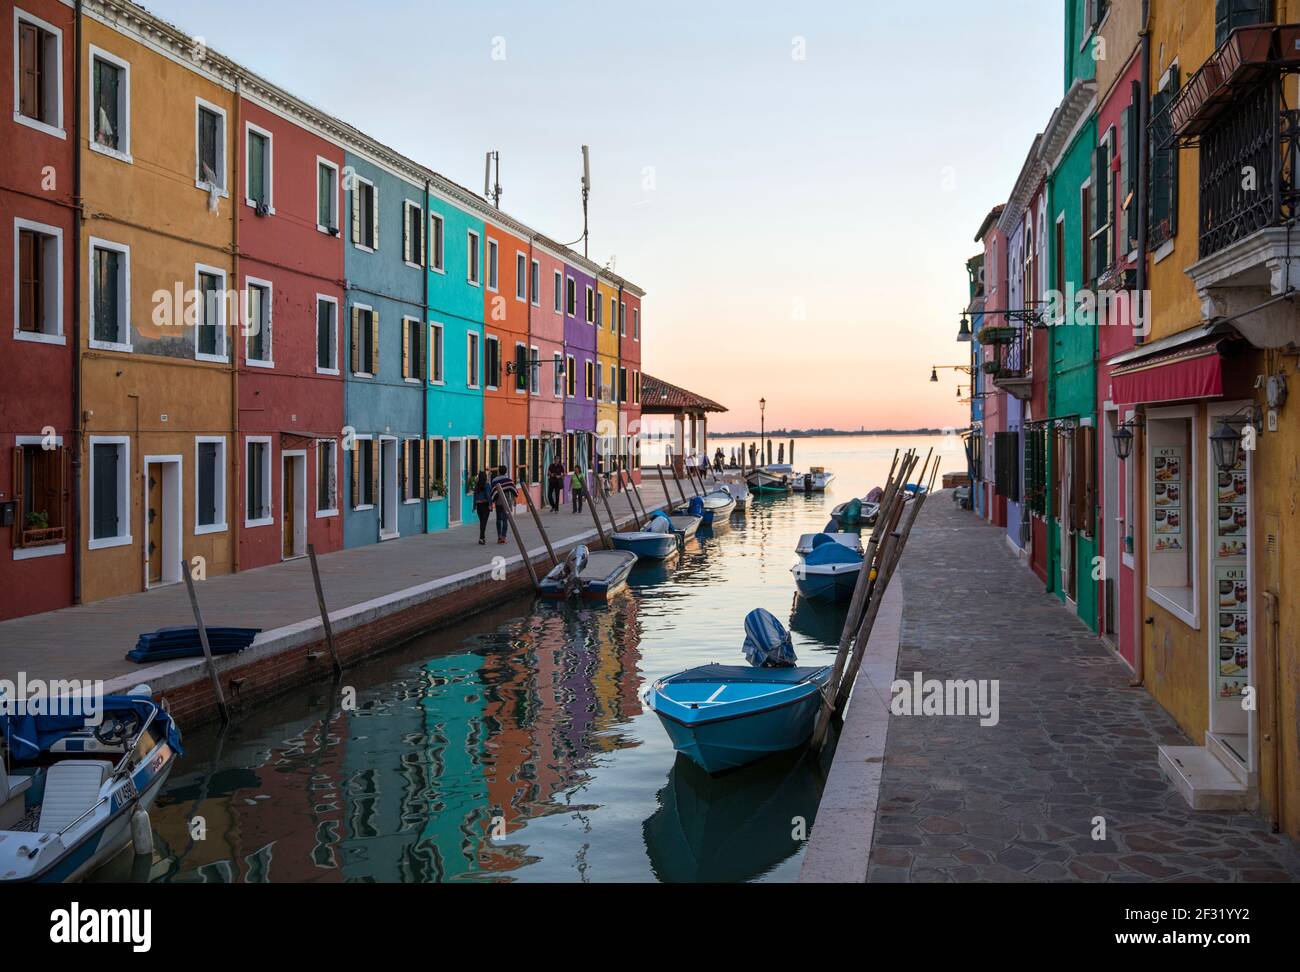 Italien, Venedig, Burano, farbenfrohe Gebäude an einem Kanal. Burano war eine Fischerinsel und auch bekannt für Spitze. Stockfoto